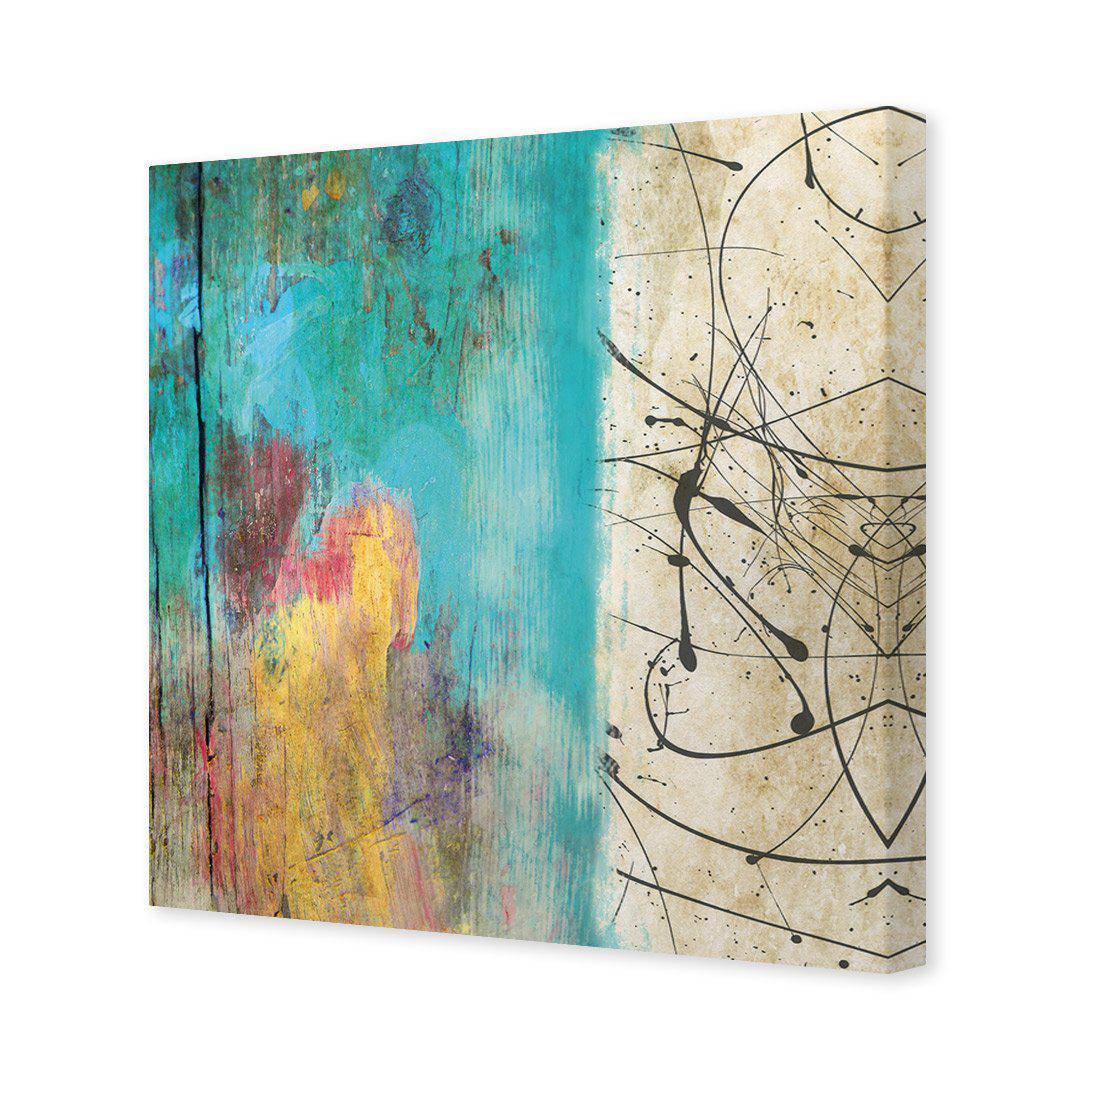 Painted Grunge Splatter Canvas Art-Canvas-Wall Art Designs-30x30cm-Canvas - No Frame-Wall Art Designs